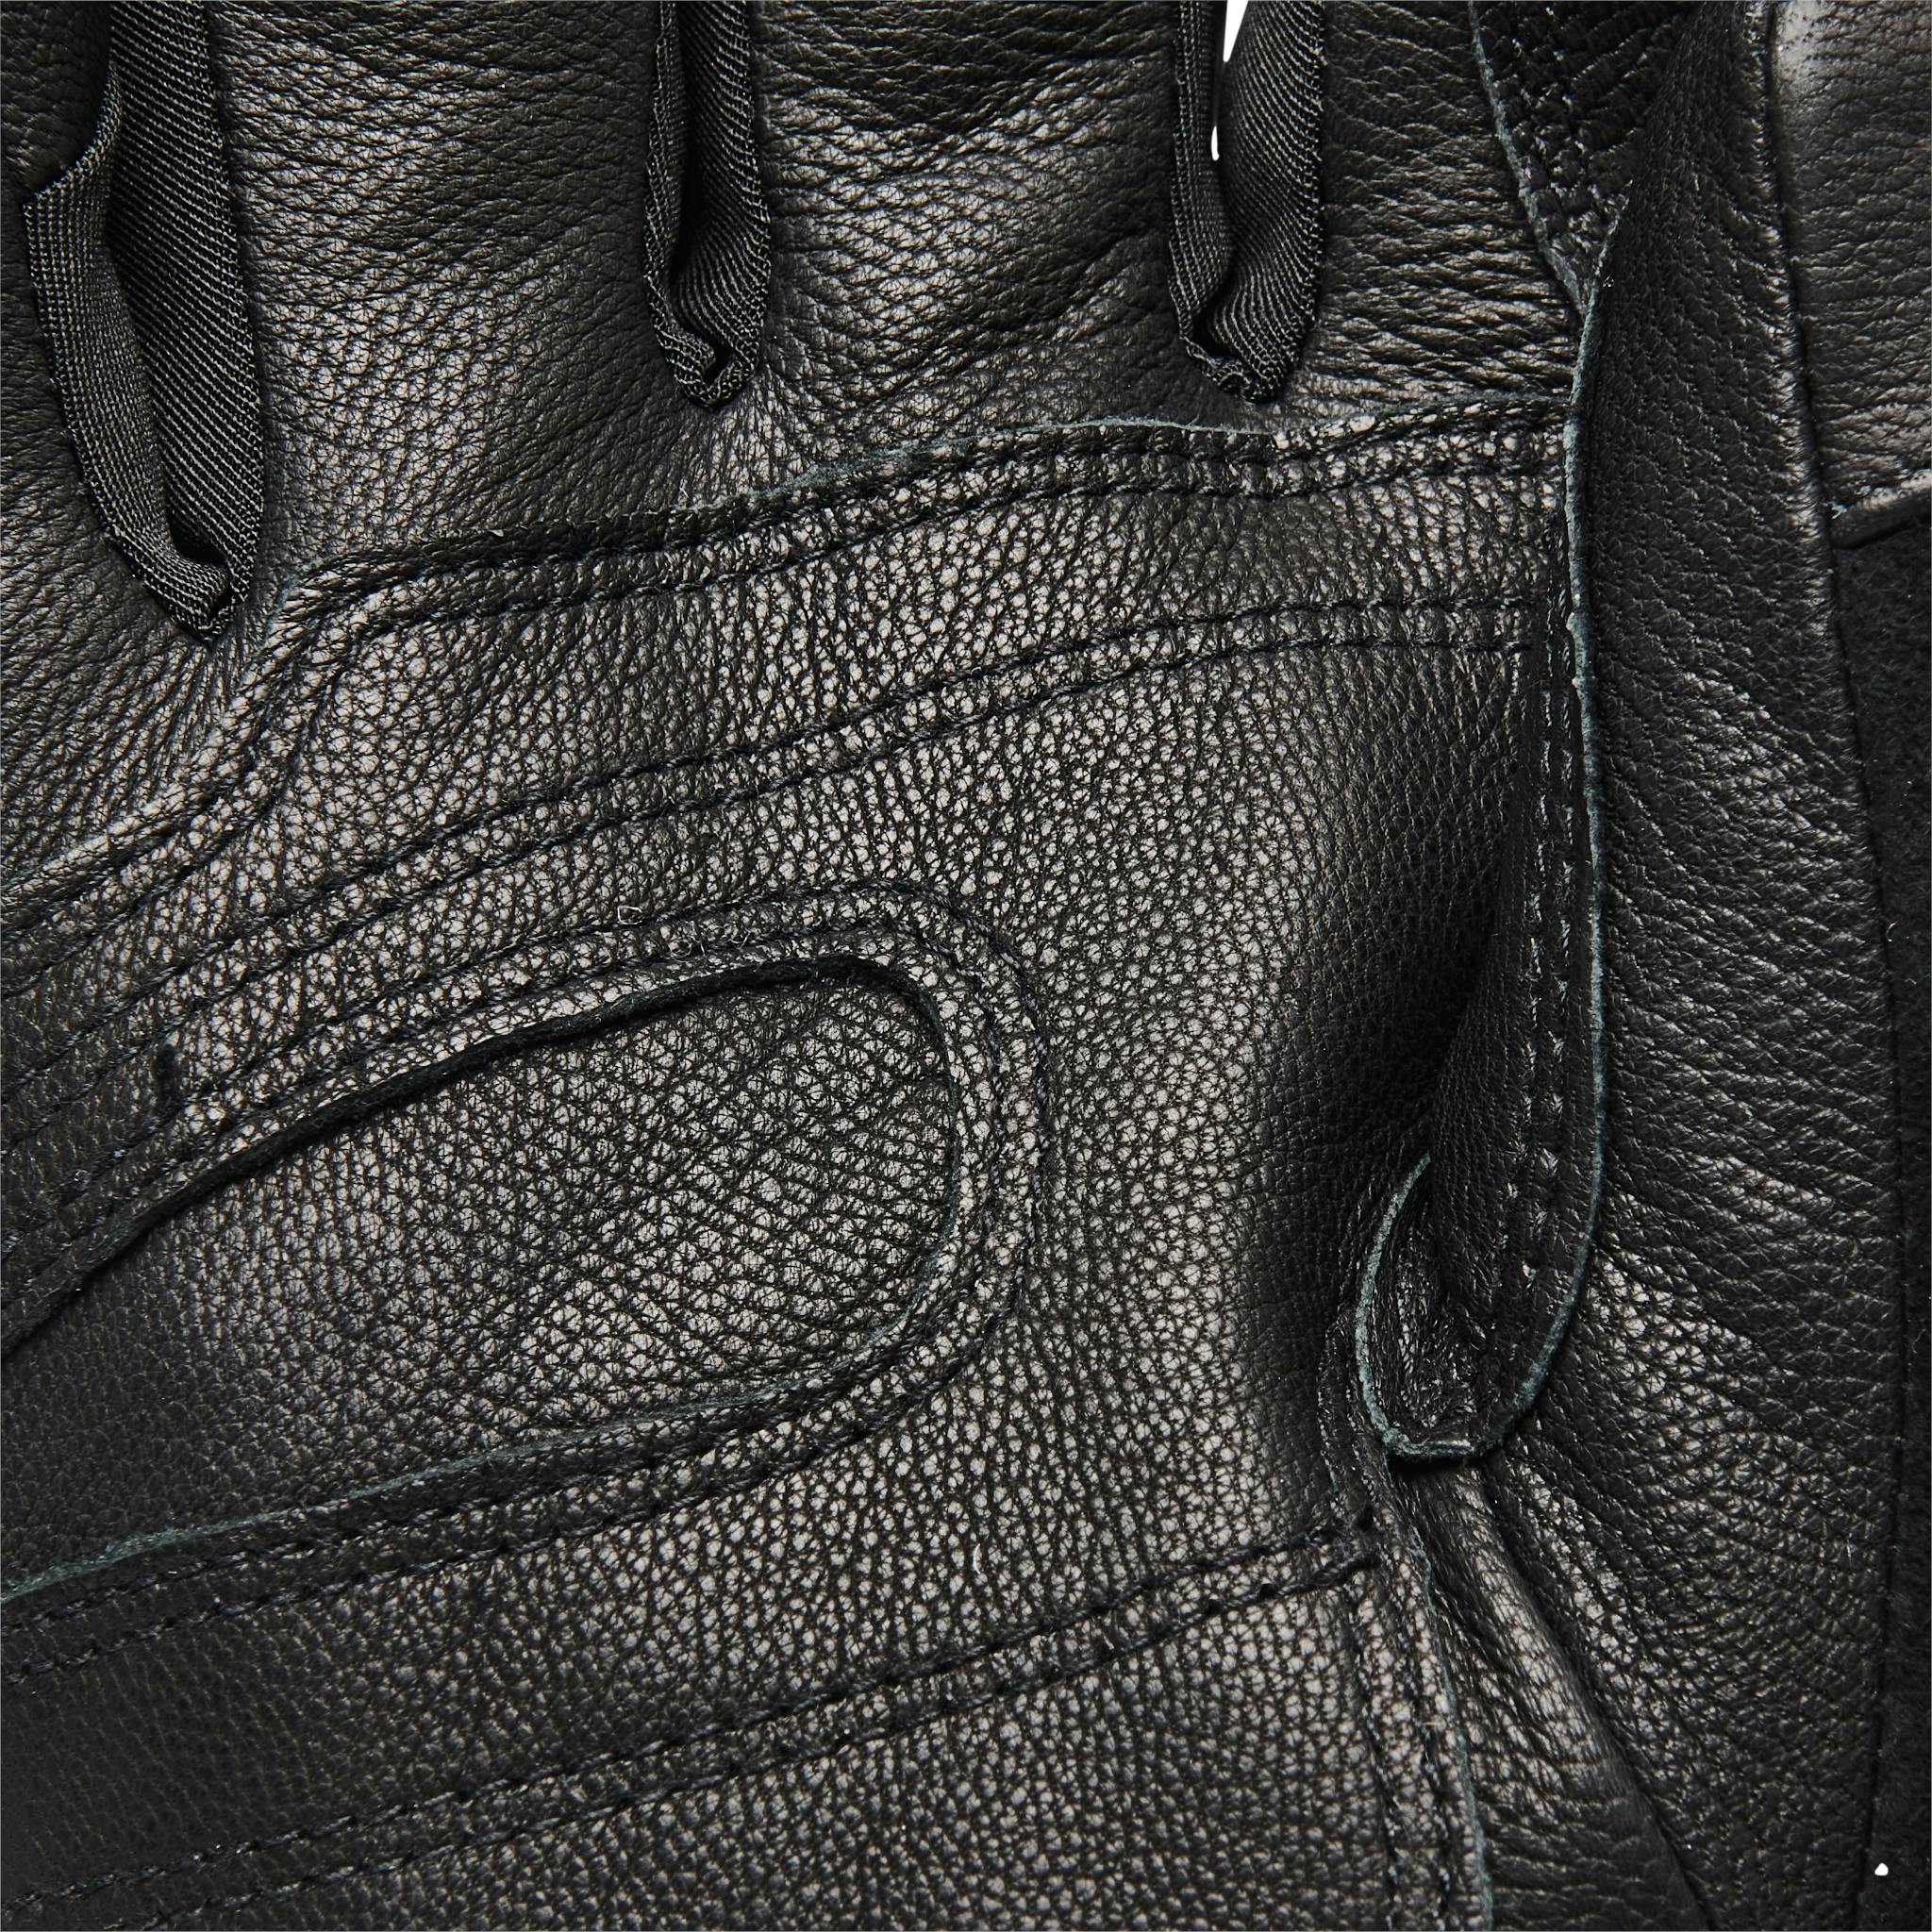 Detailaufnahme der Lederhandfläche